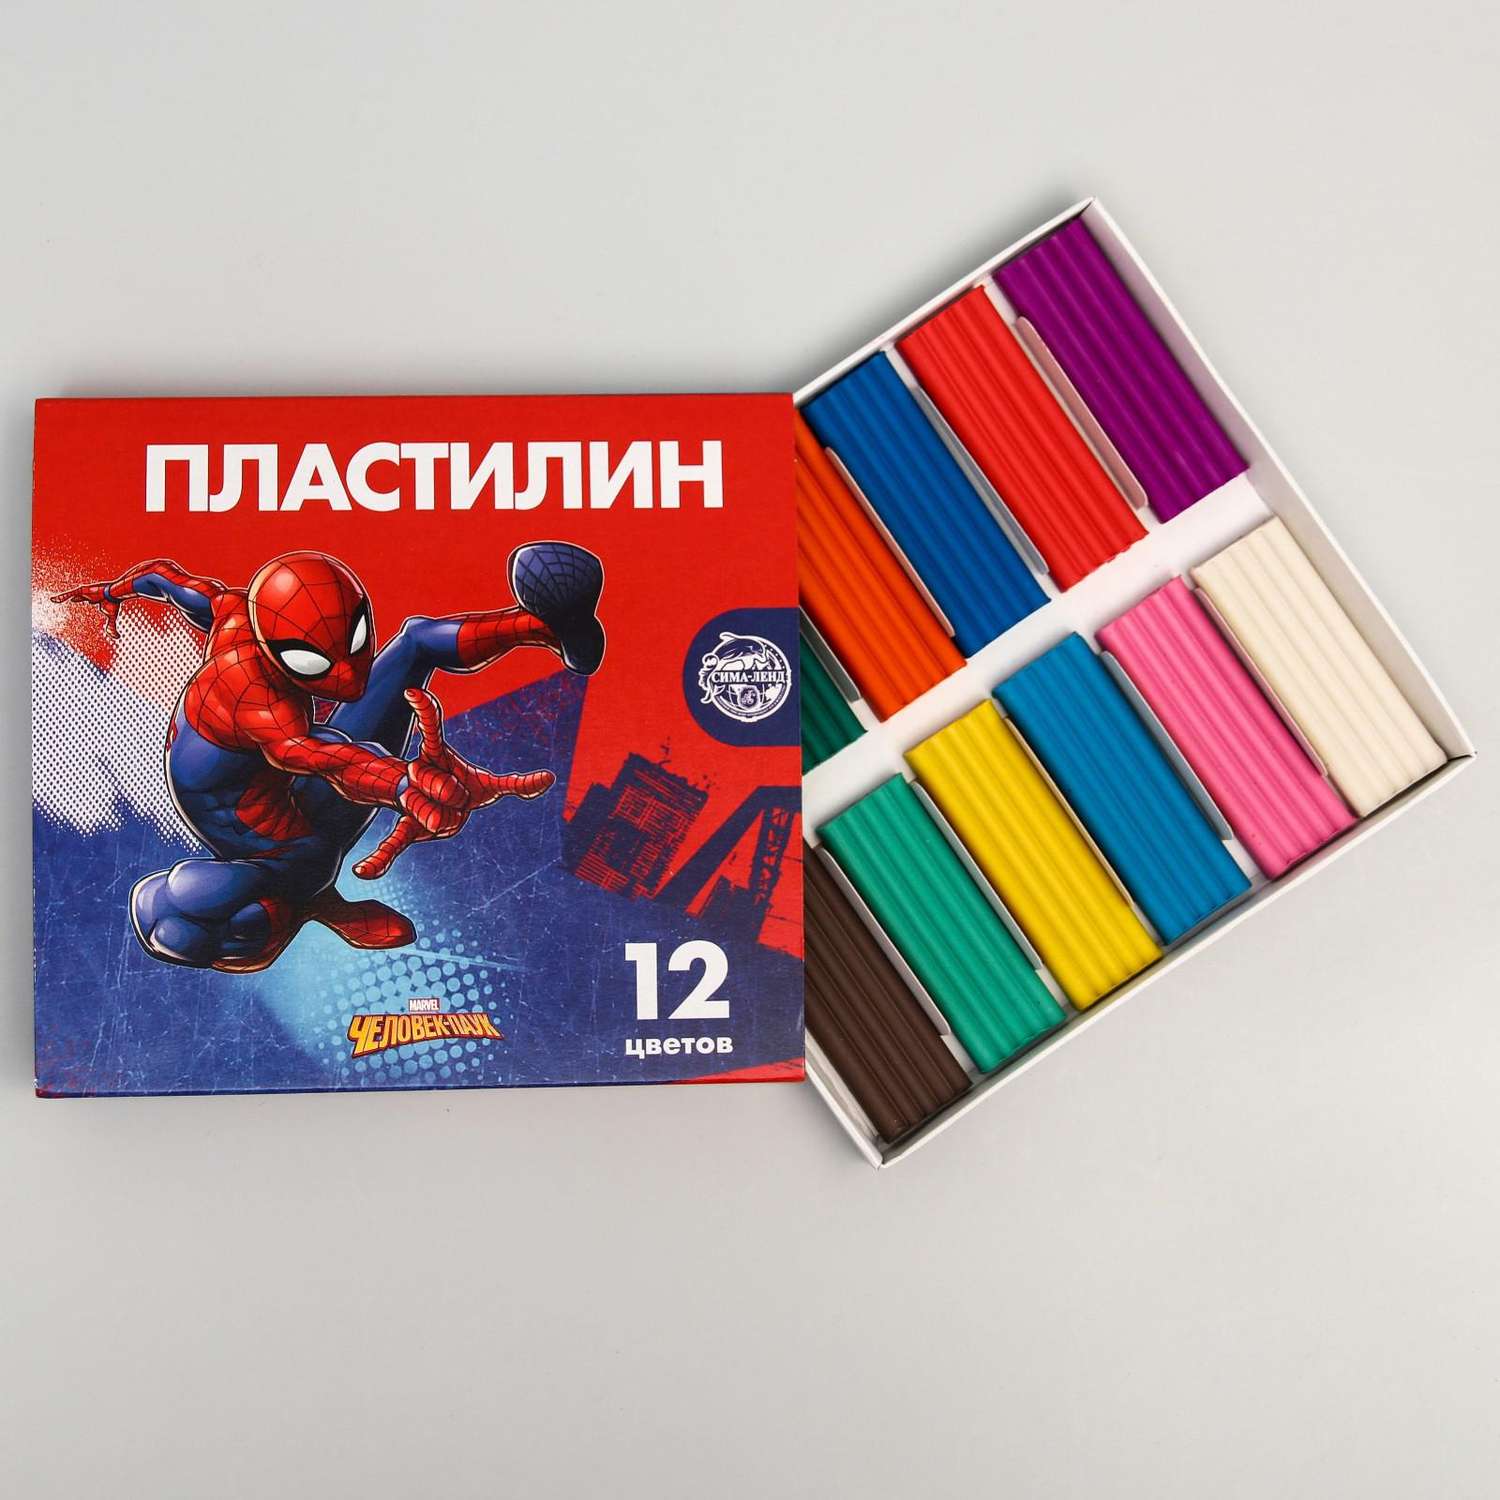 Пластилин MARVEL 12 цветов 180 г «Супергерой» Человек-паук - фото 2